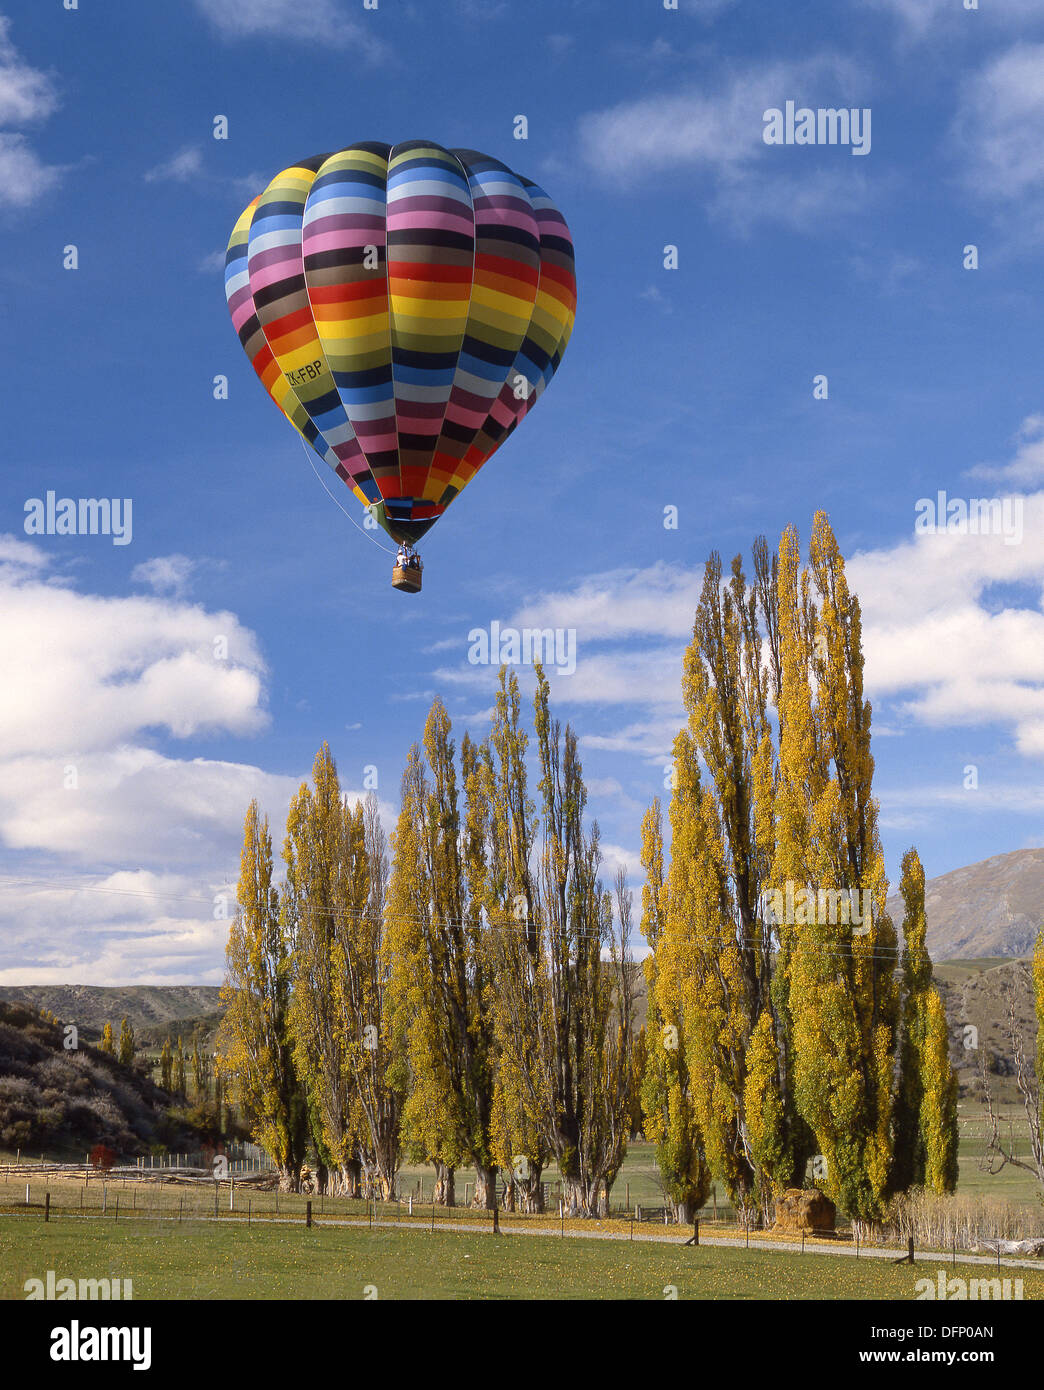 Hot-air ballooning near Queenstown New Zealand Stock Photo